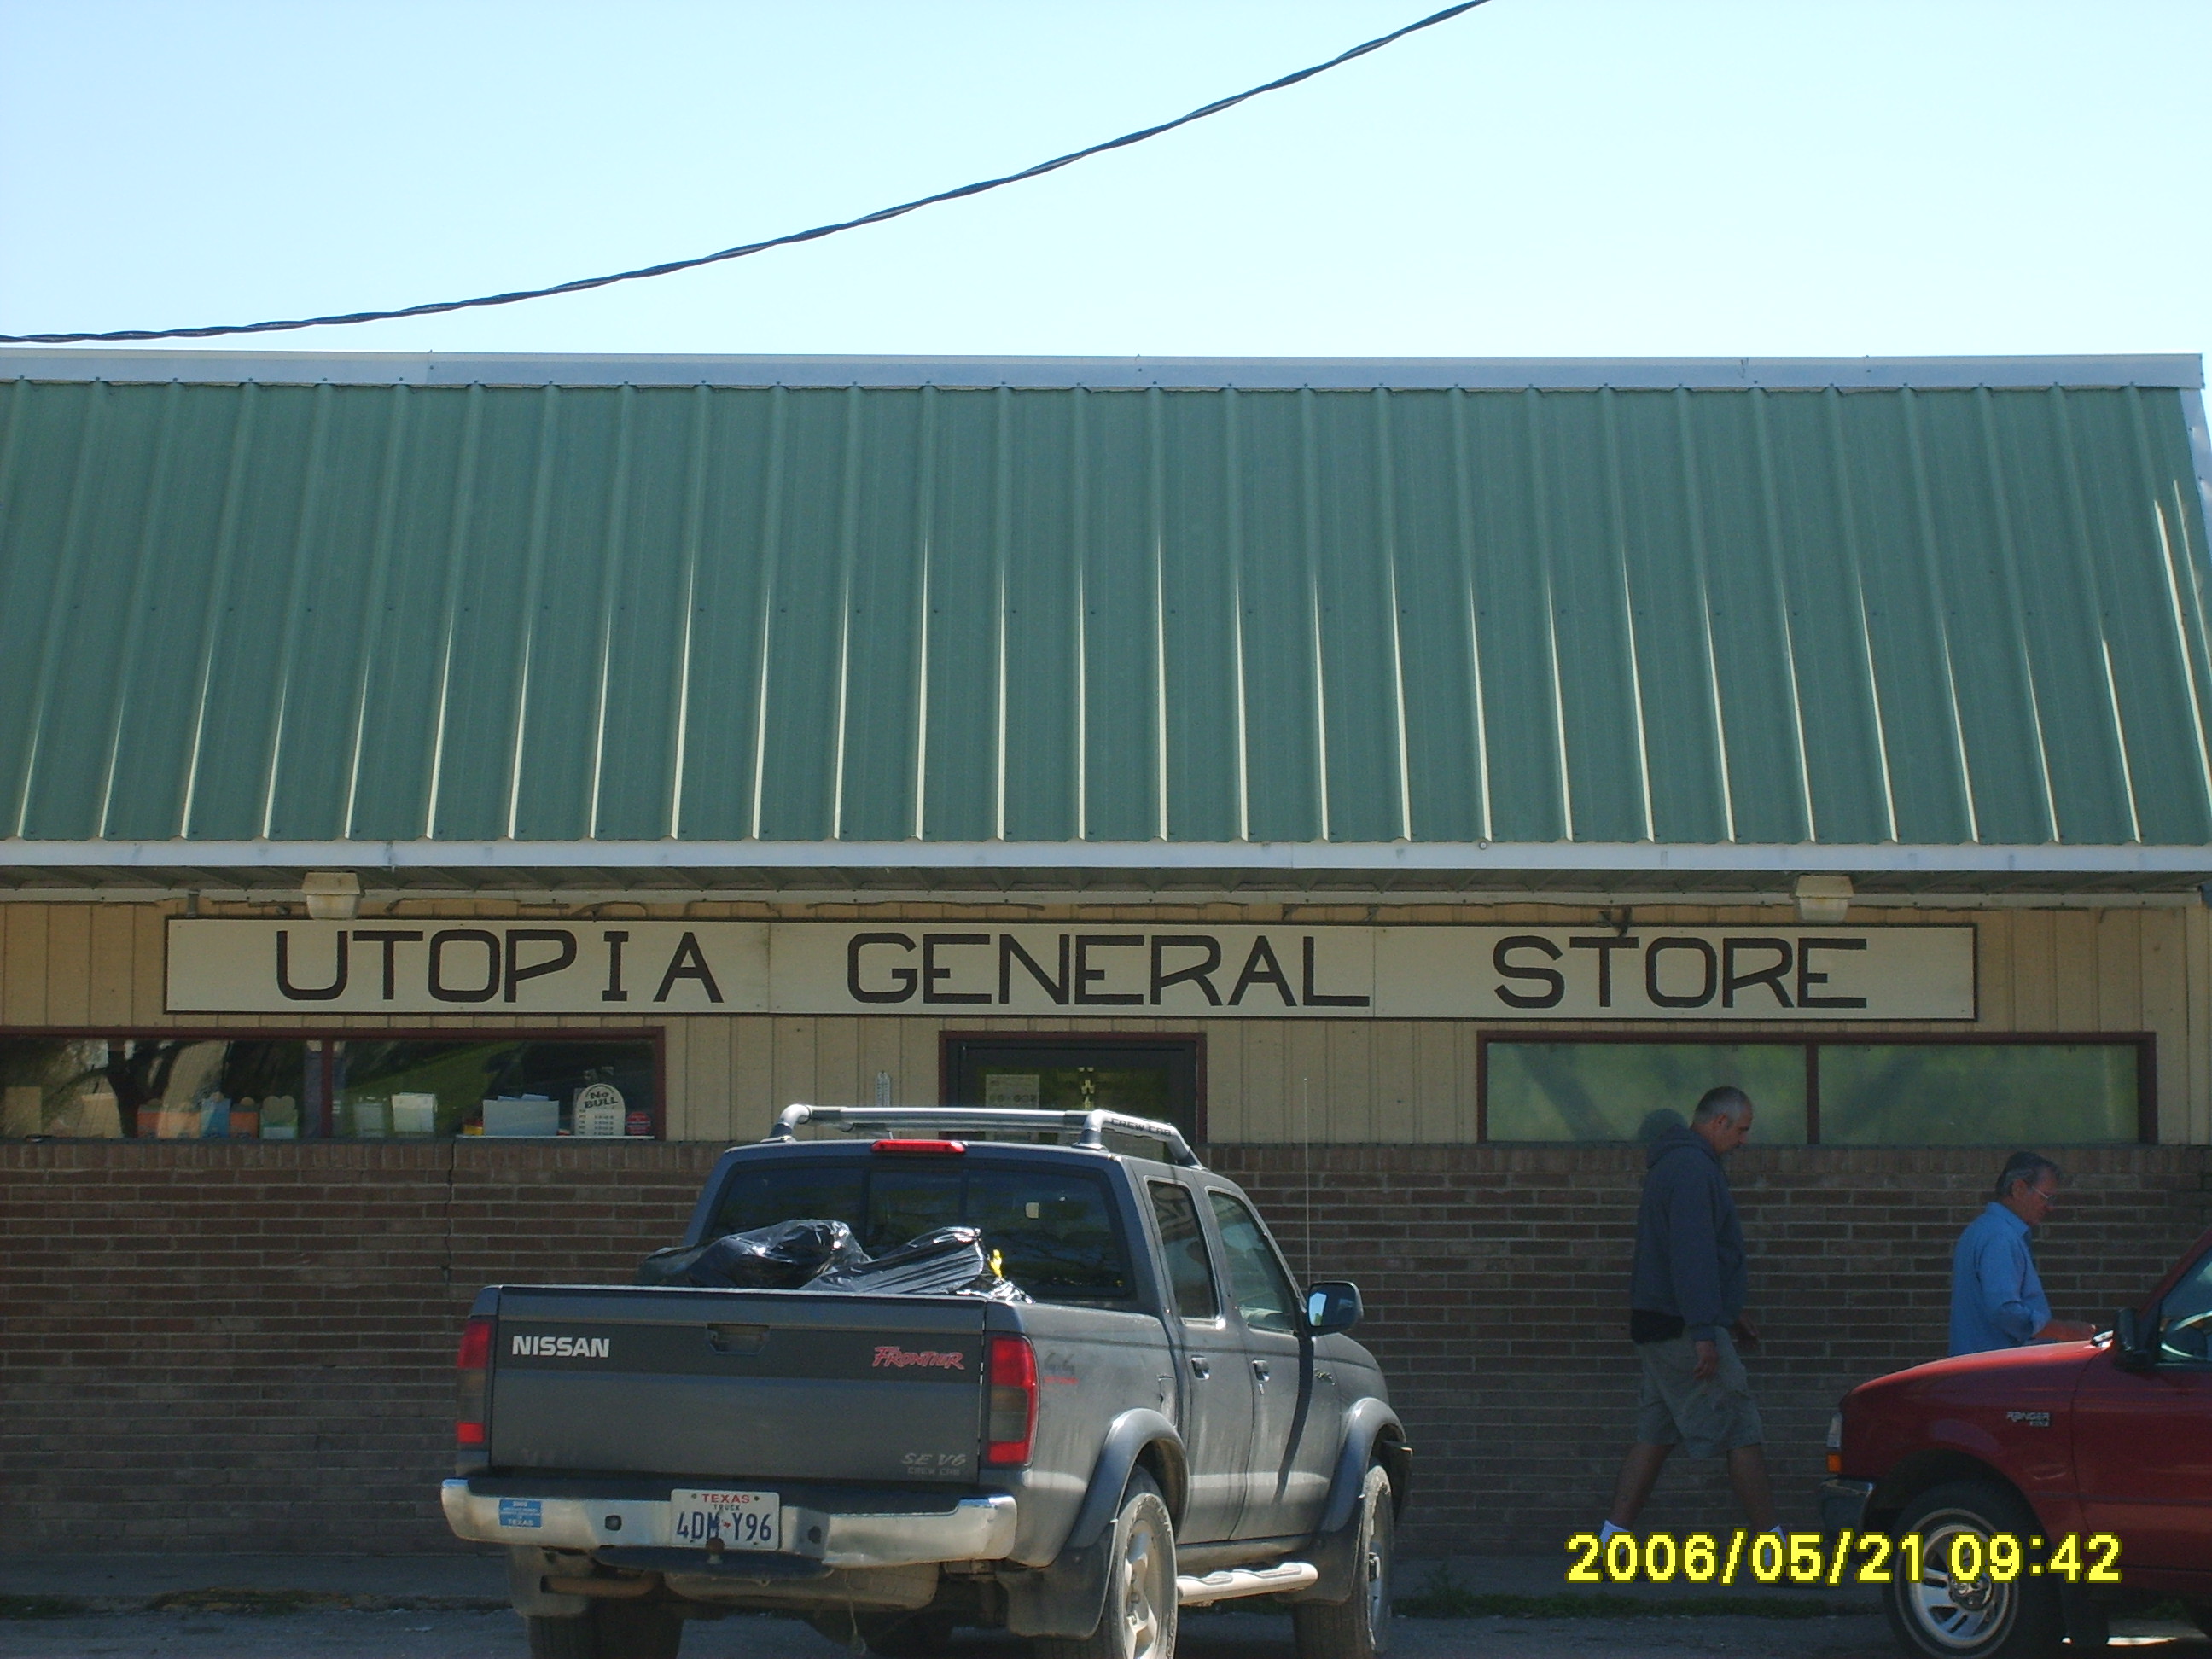 Utopia General Store